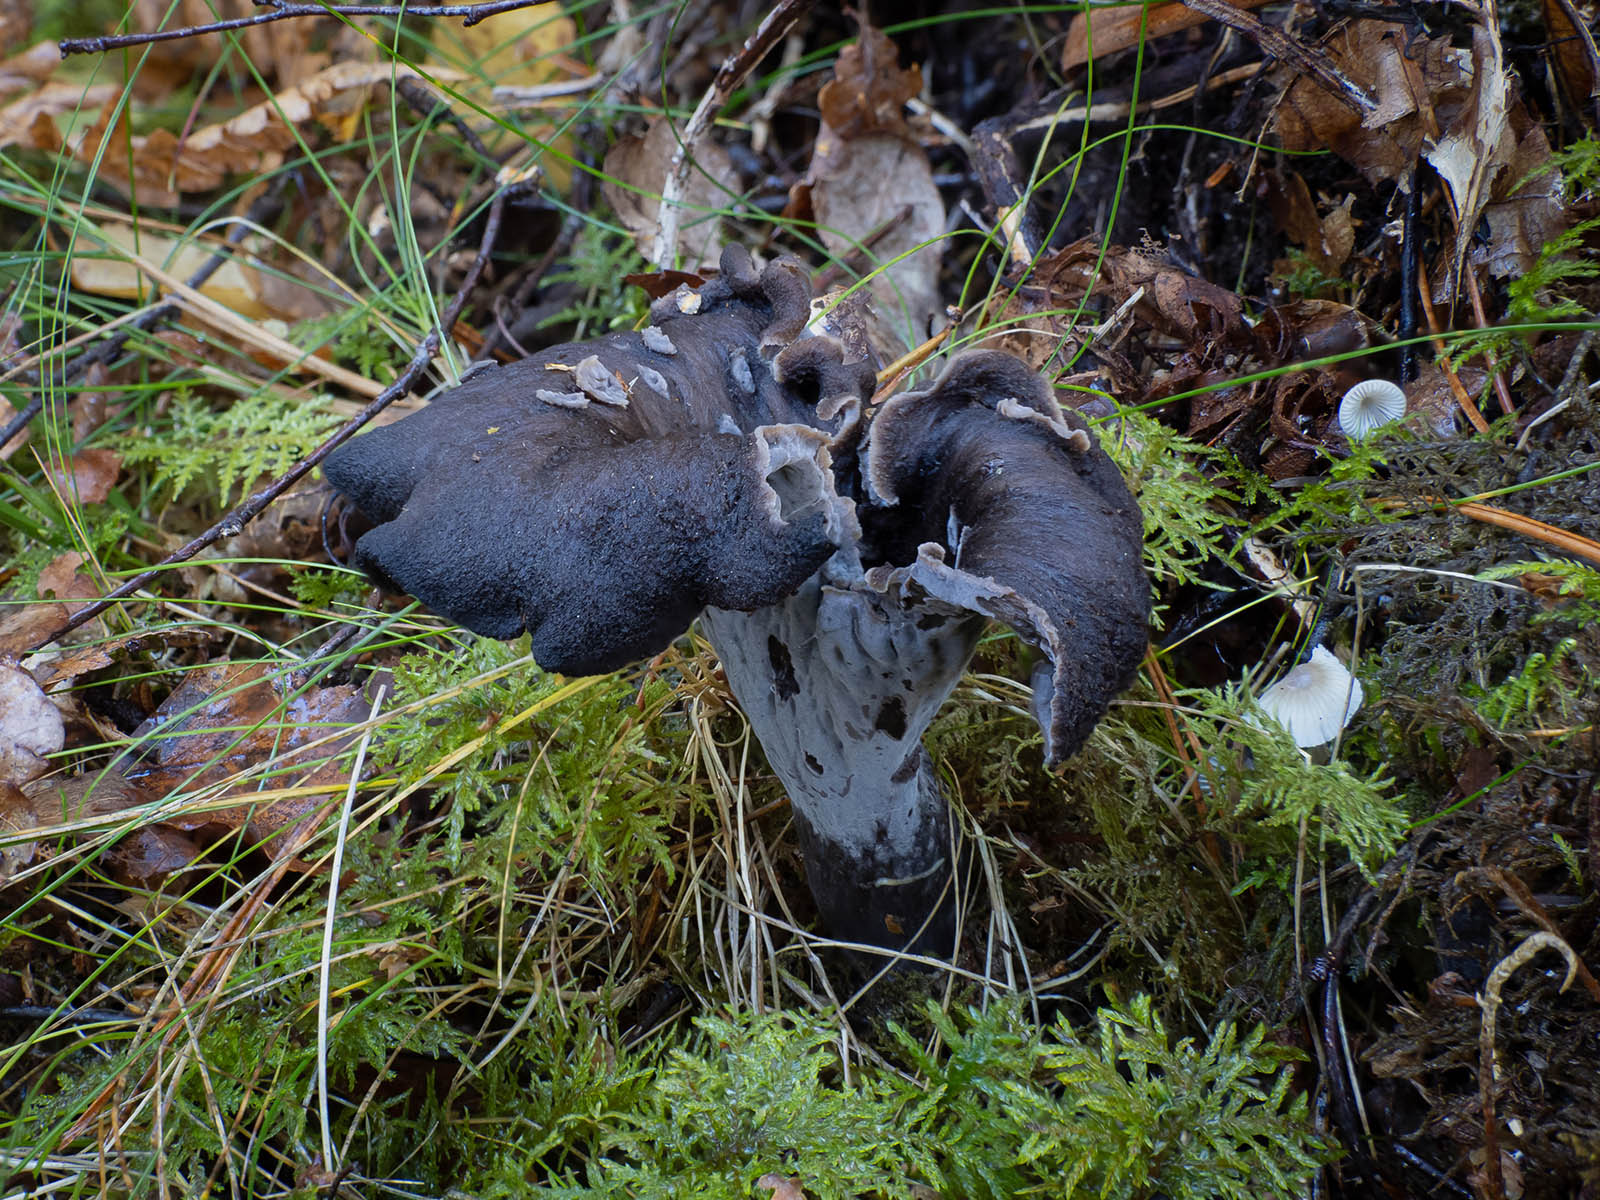 Вороночник рожковидный (Craterellus cornucopioides) в природном парке G?rv?ln, Стокгольм. Октябрь 2020 года. Автор фото: Сутормина Марина